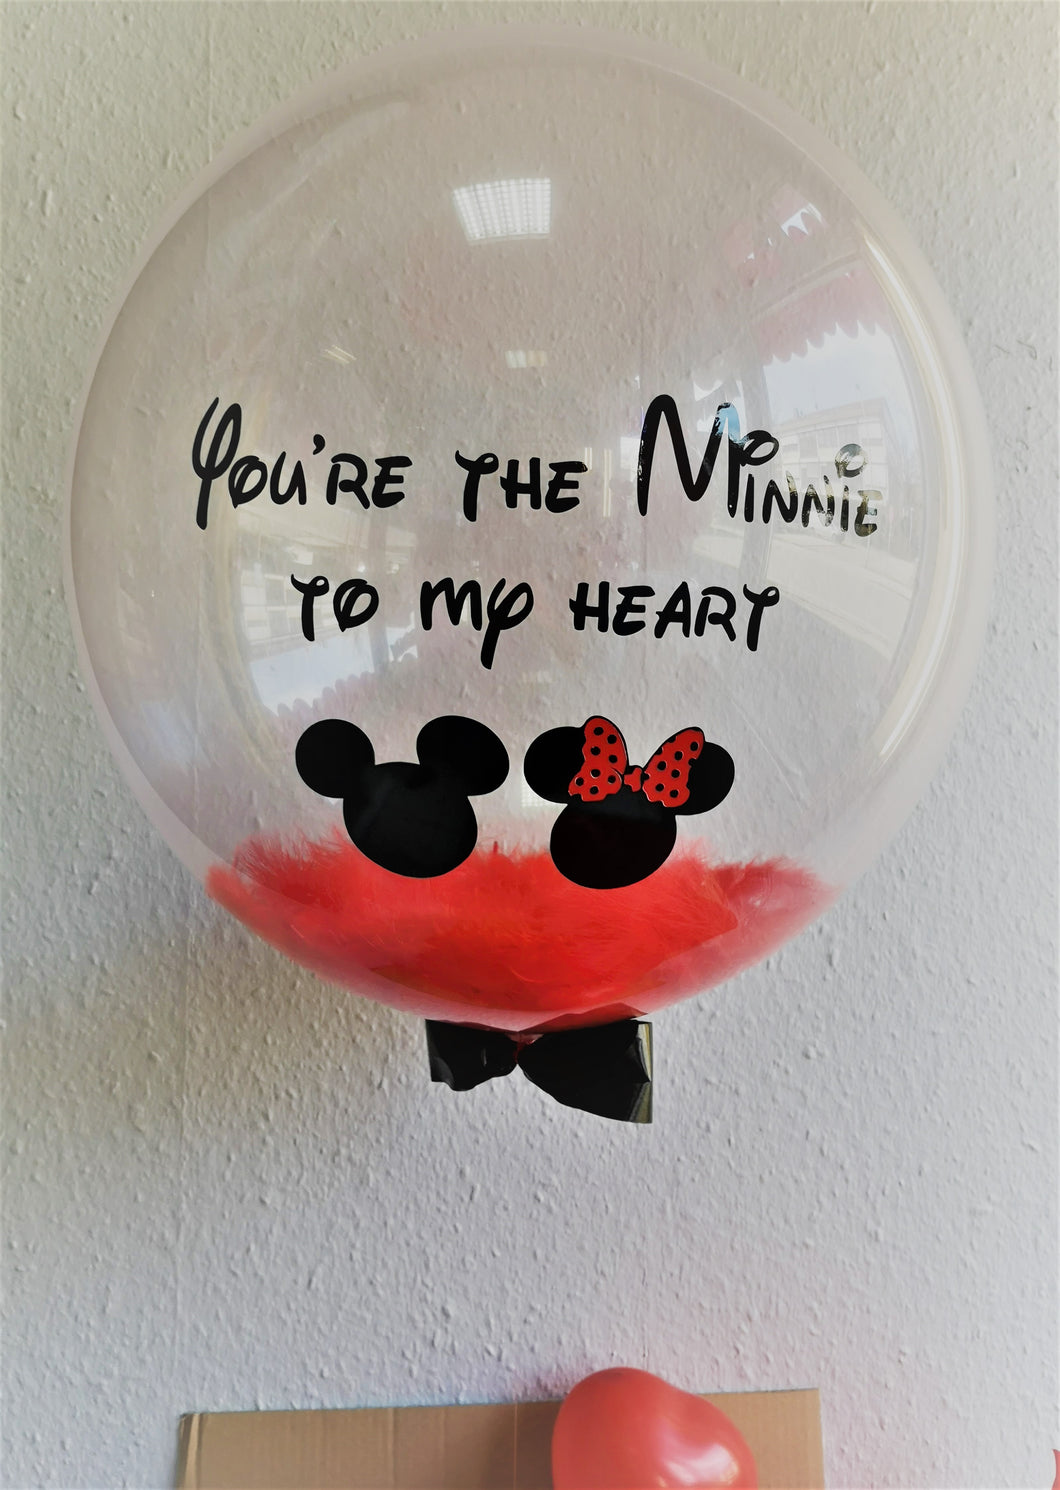 Minnie to my Heart